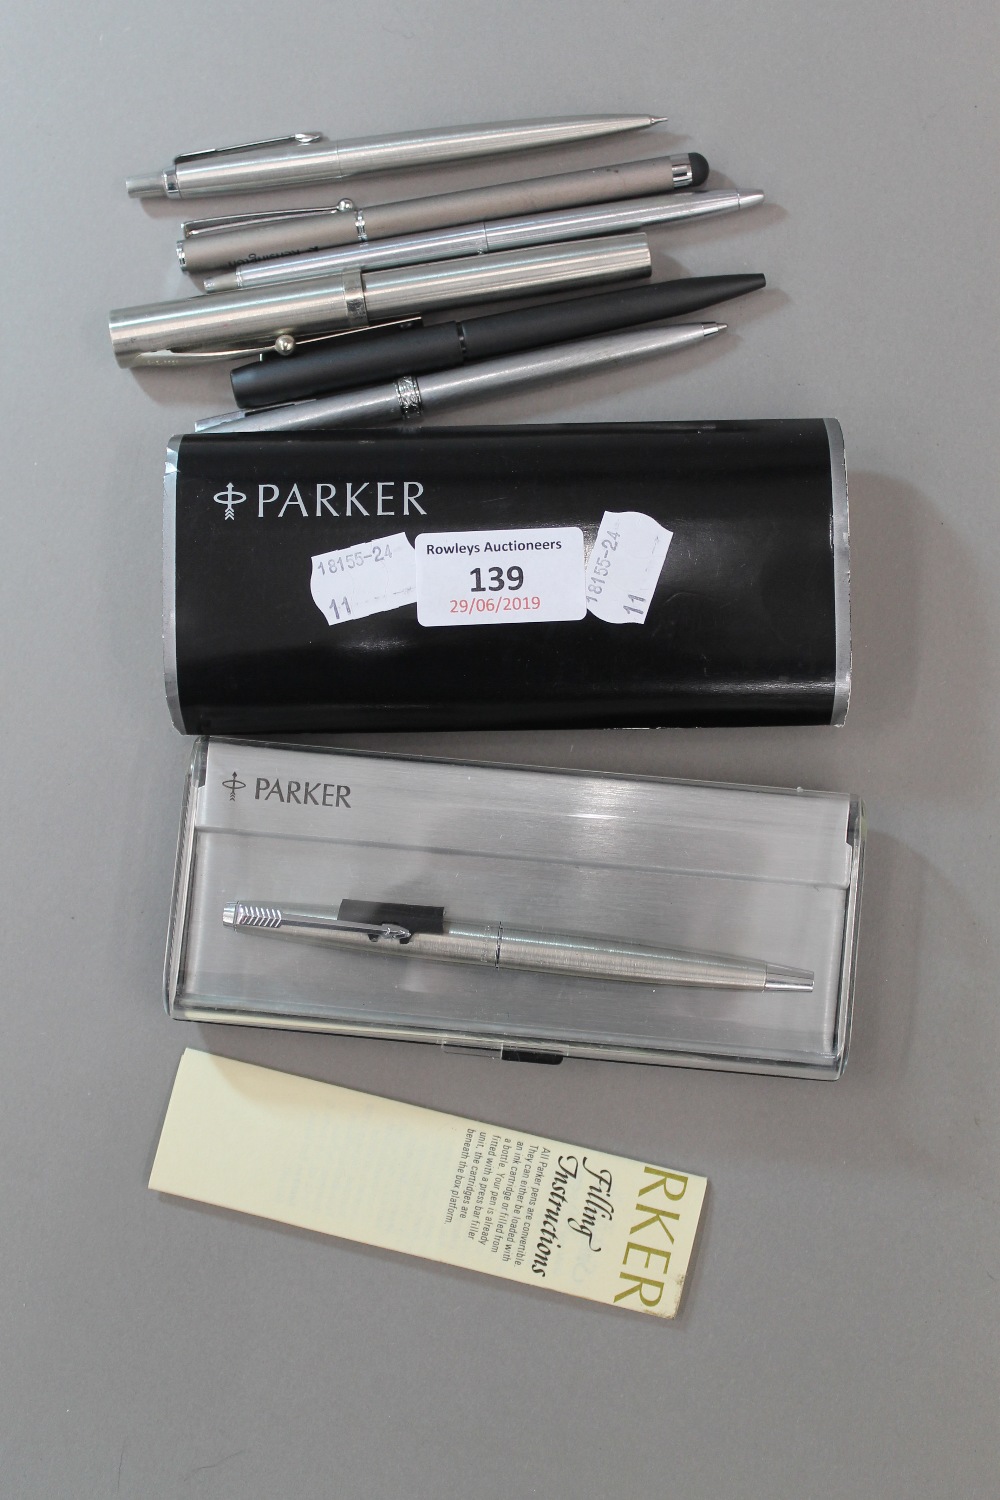 A quantity of Parker pens